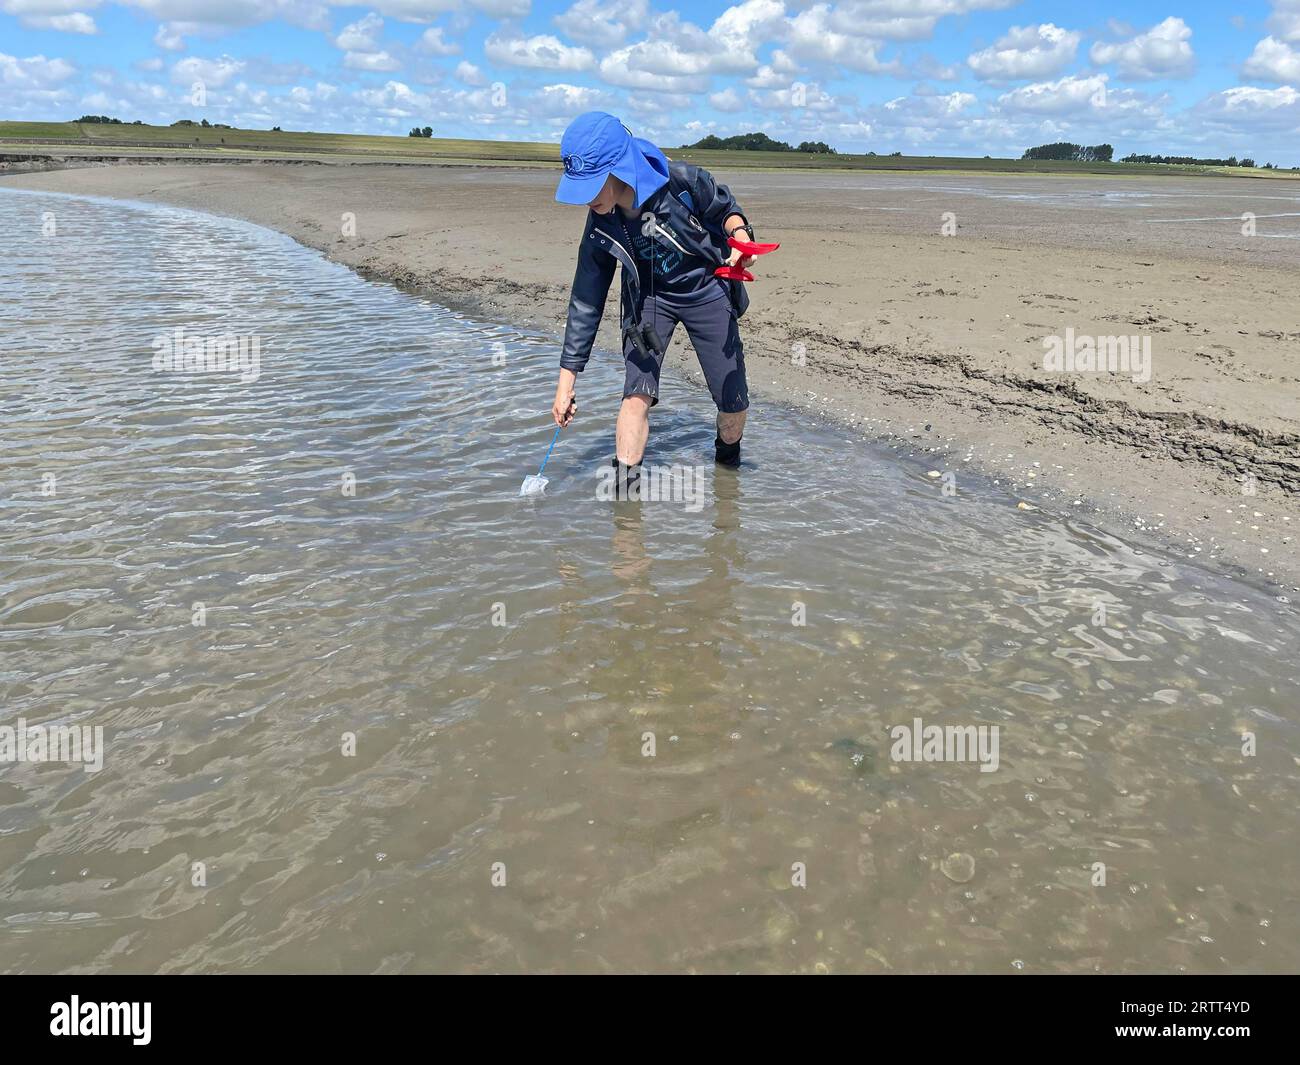 Promenade en plaine boueuse, les jeunes attrapent des crevettes brunes (Crangon crangon) dans la plaine de marée, mer des Wadden, marée basse, parc national, site du patrimoine mondial de l'UNESCO Banque D'Images